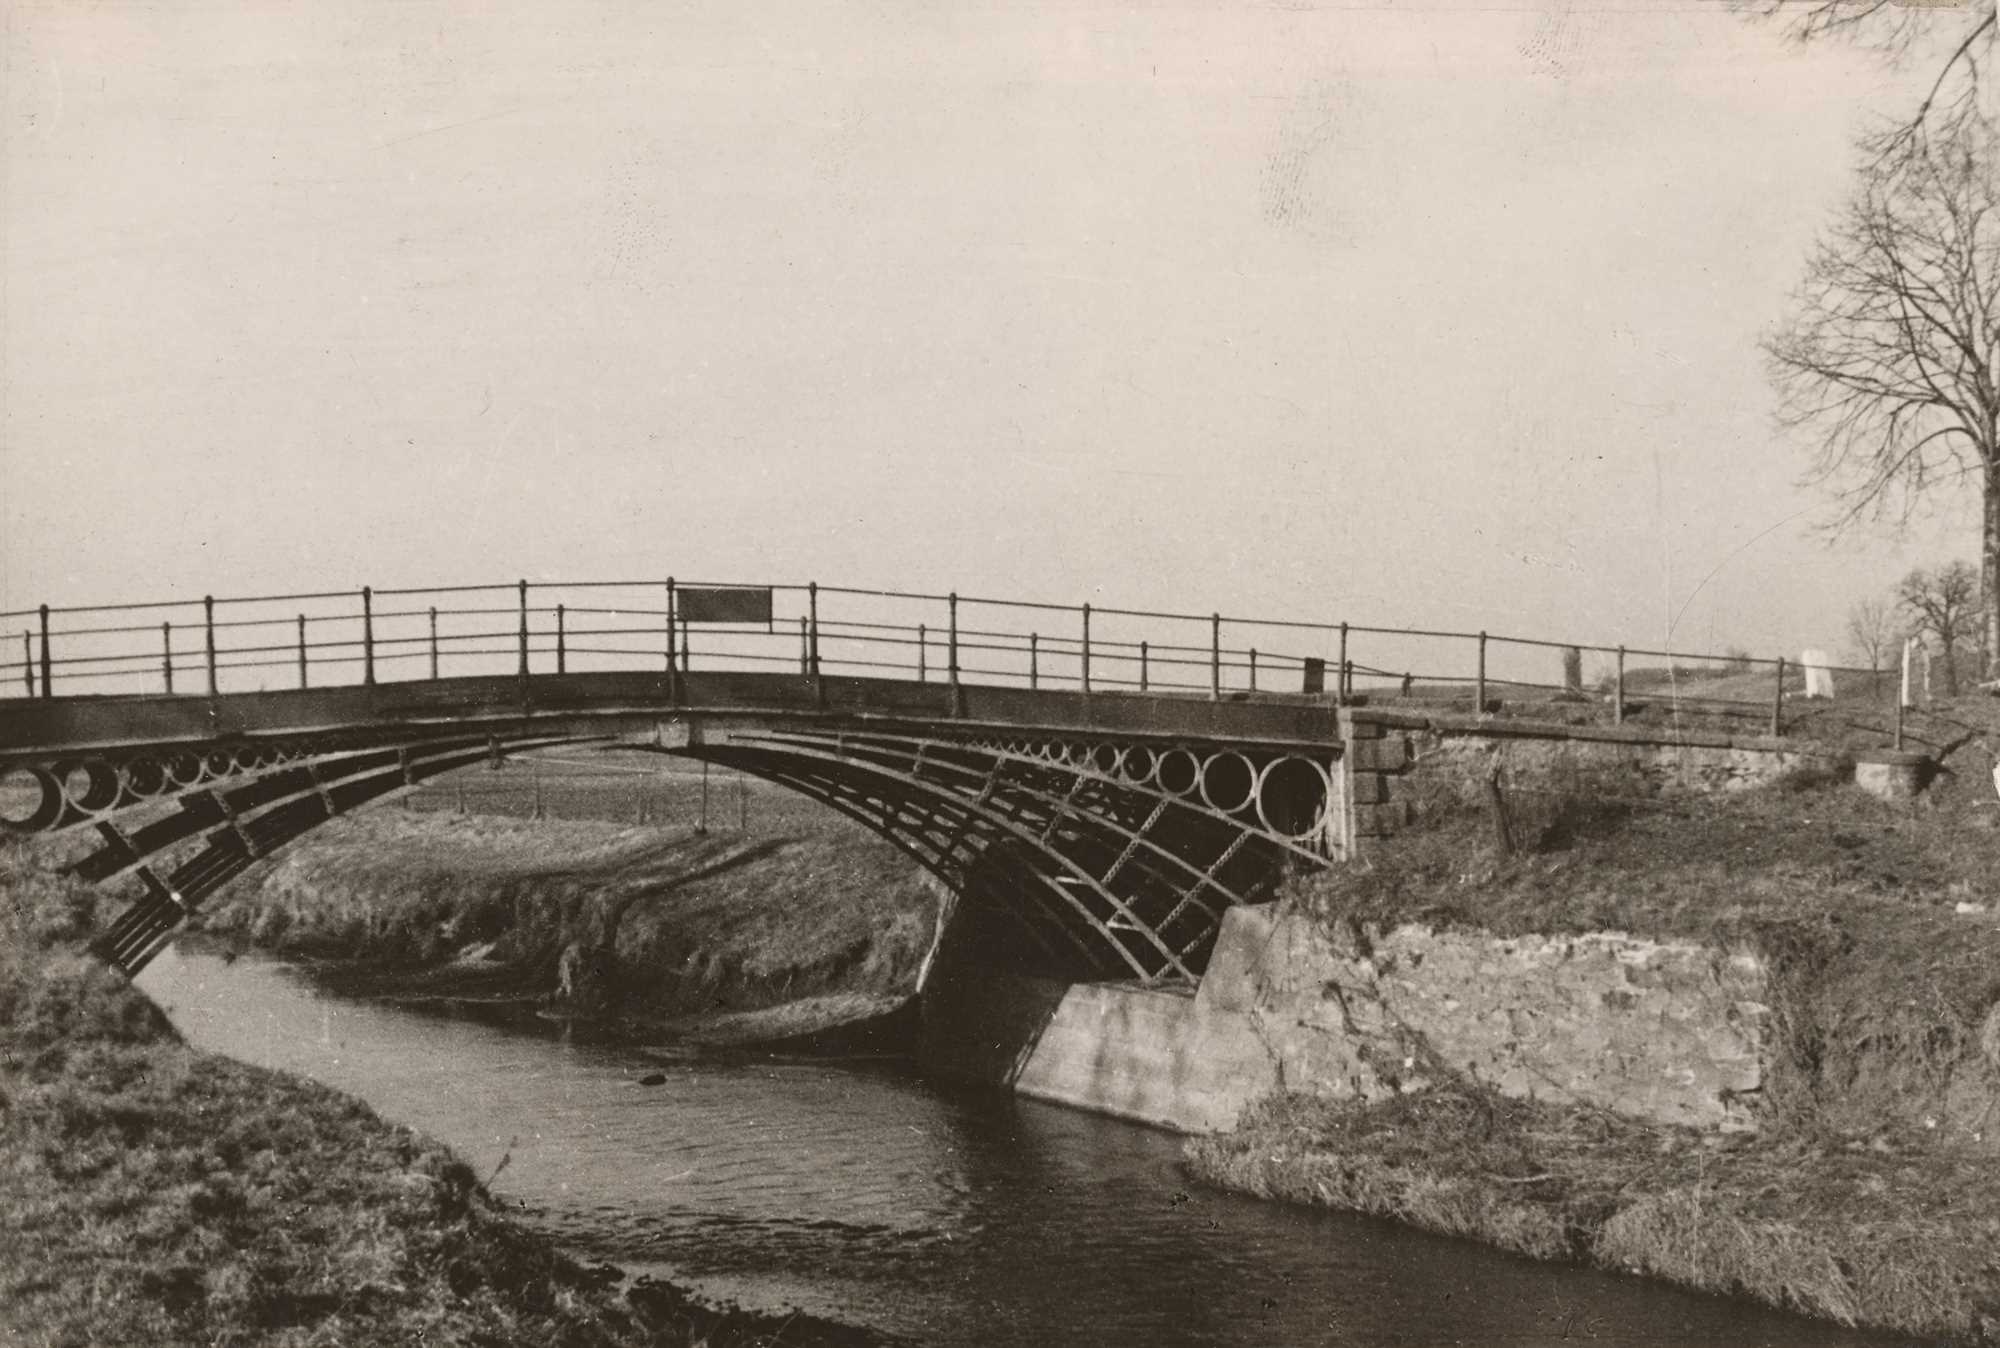 zelazny most przed1945 (3)